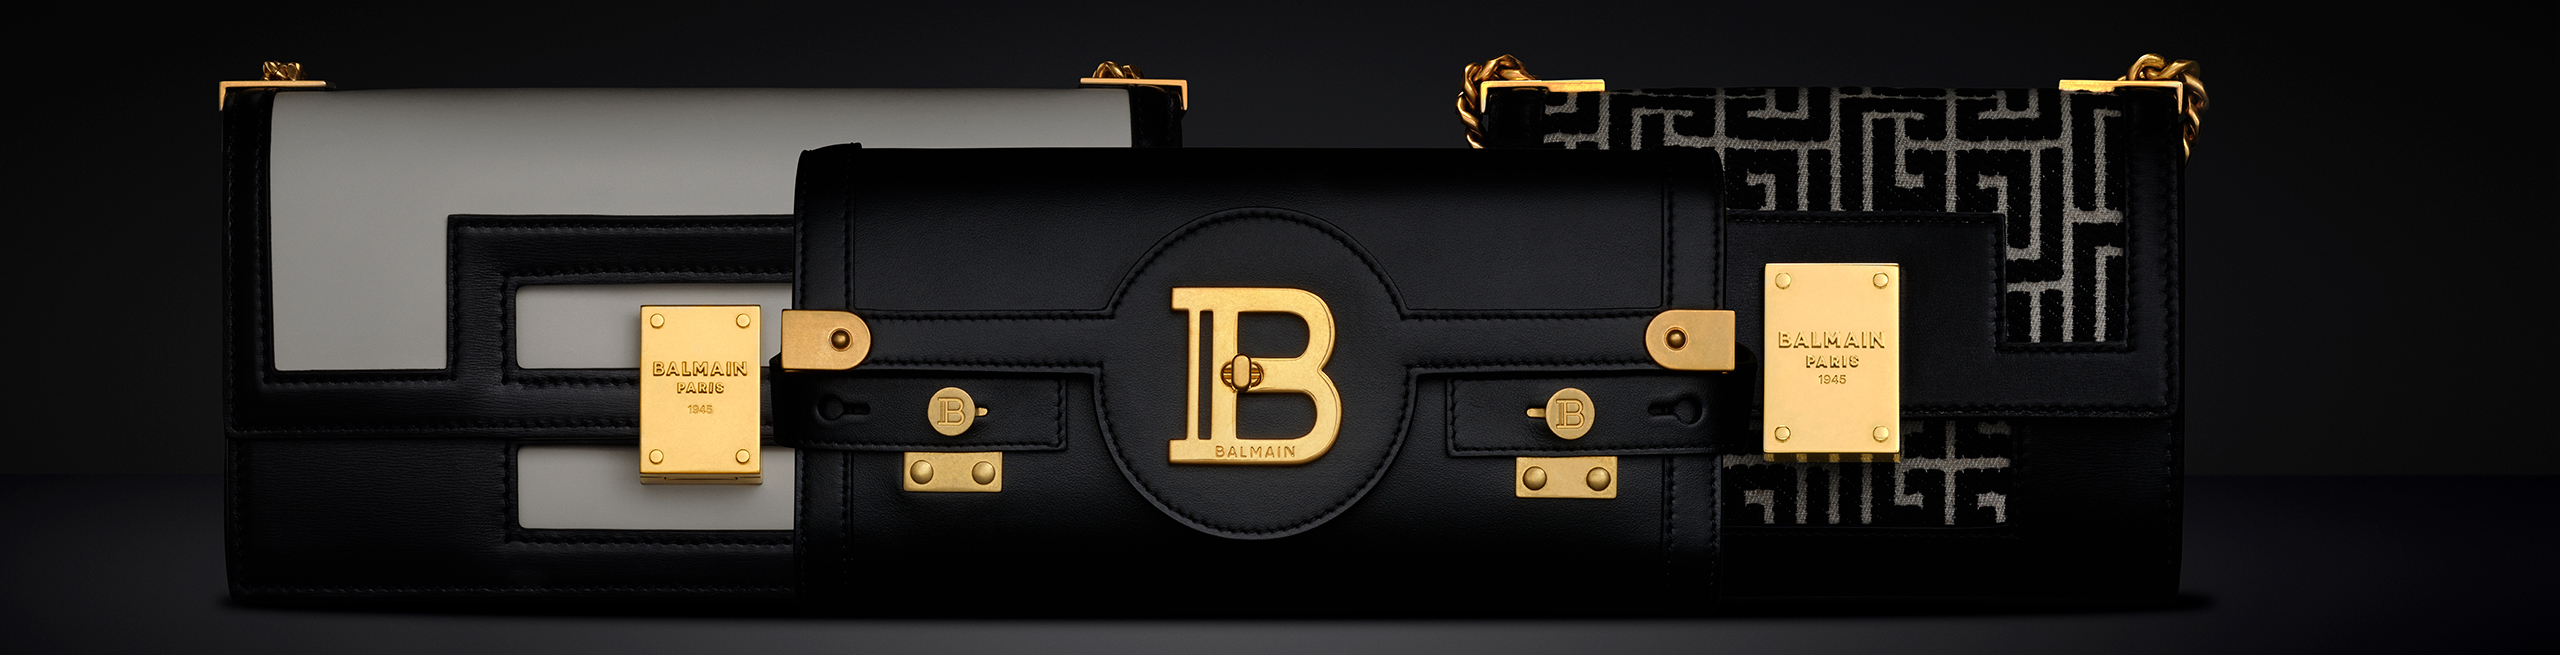 Women's Designer Bag Collection | BALMAIN